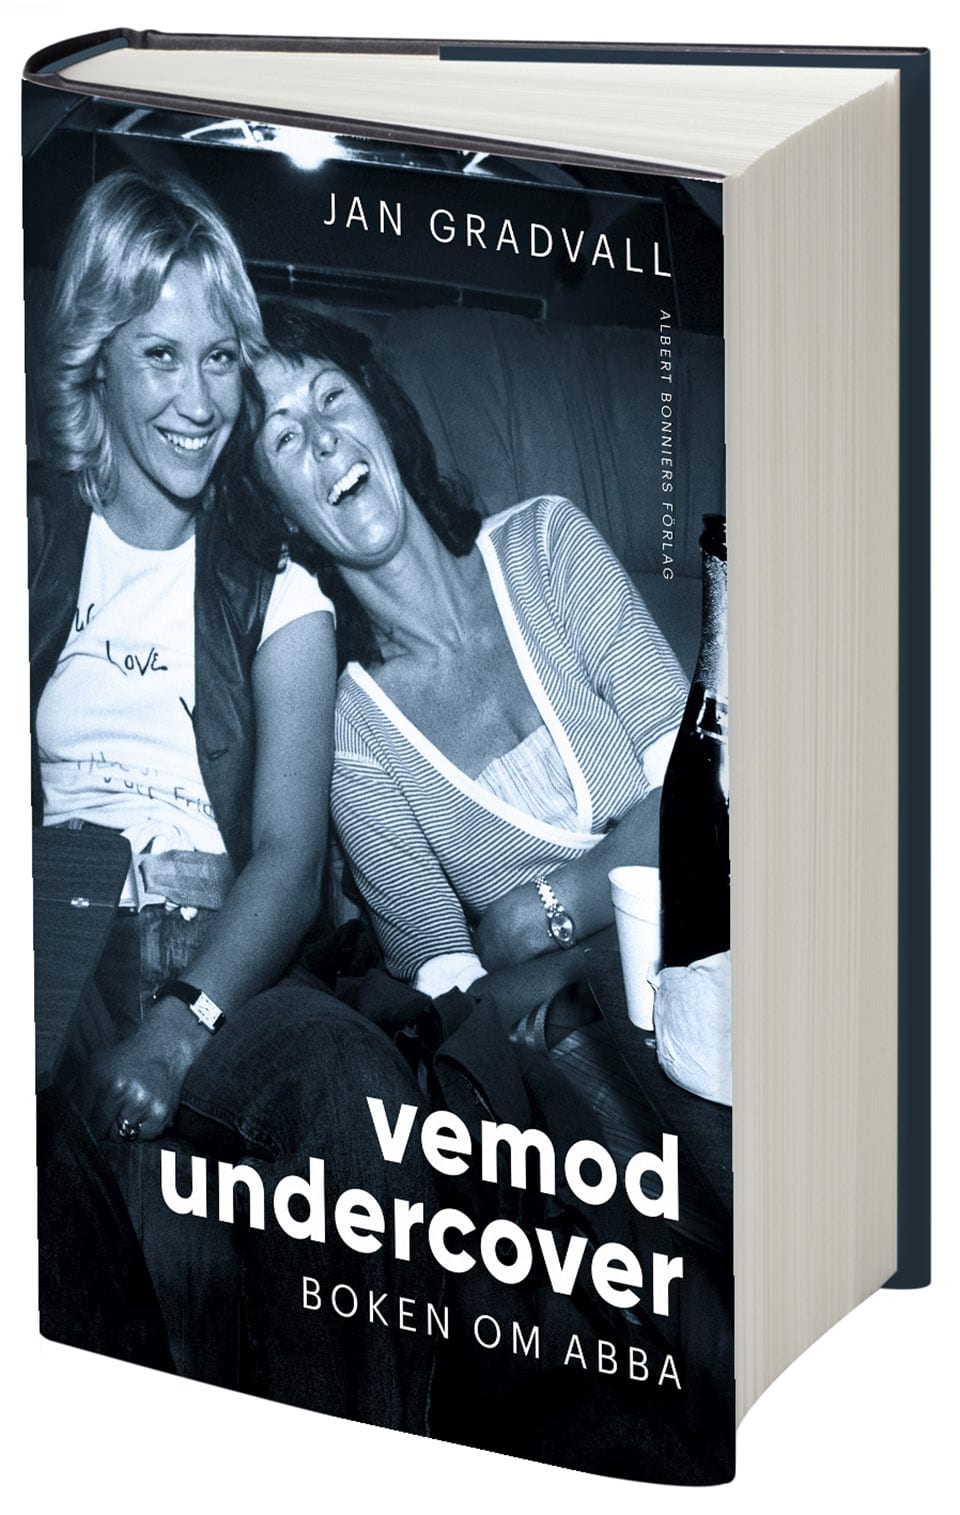 Bokrecension: Vemod Undercover - Boken om ABBA av Jan Granvall